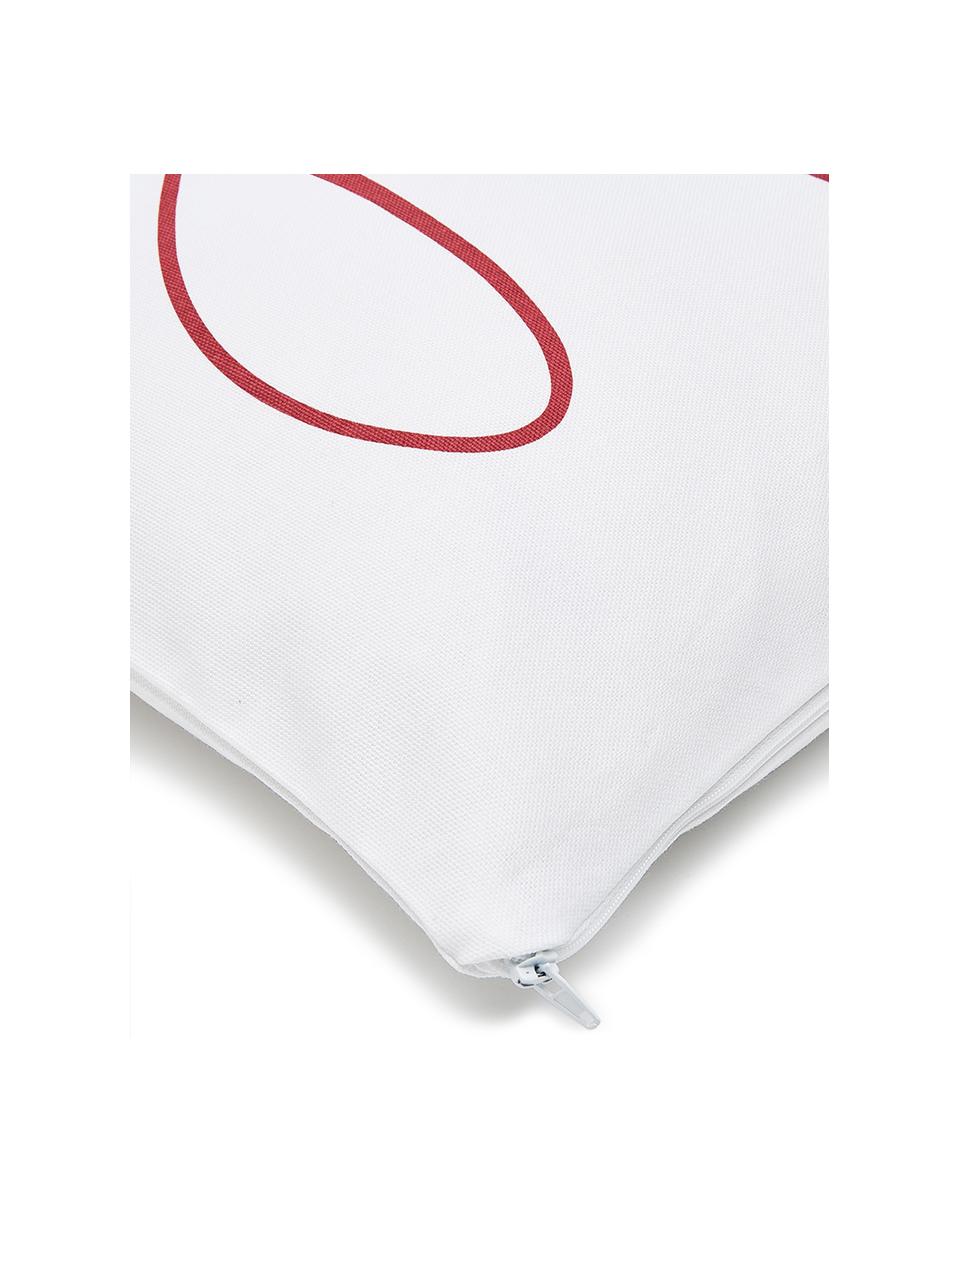 Funda de cojín joy, 100% algodón, Blanco, rojo, An 40 x L 40 cm